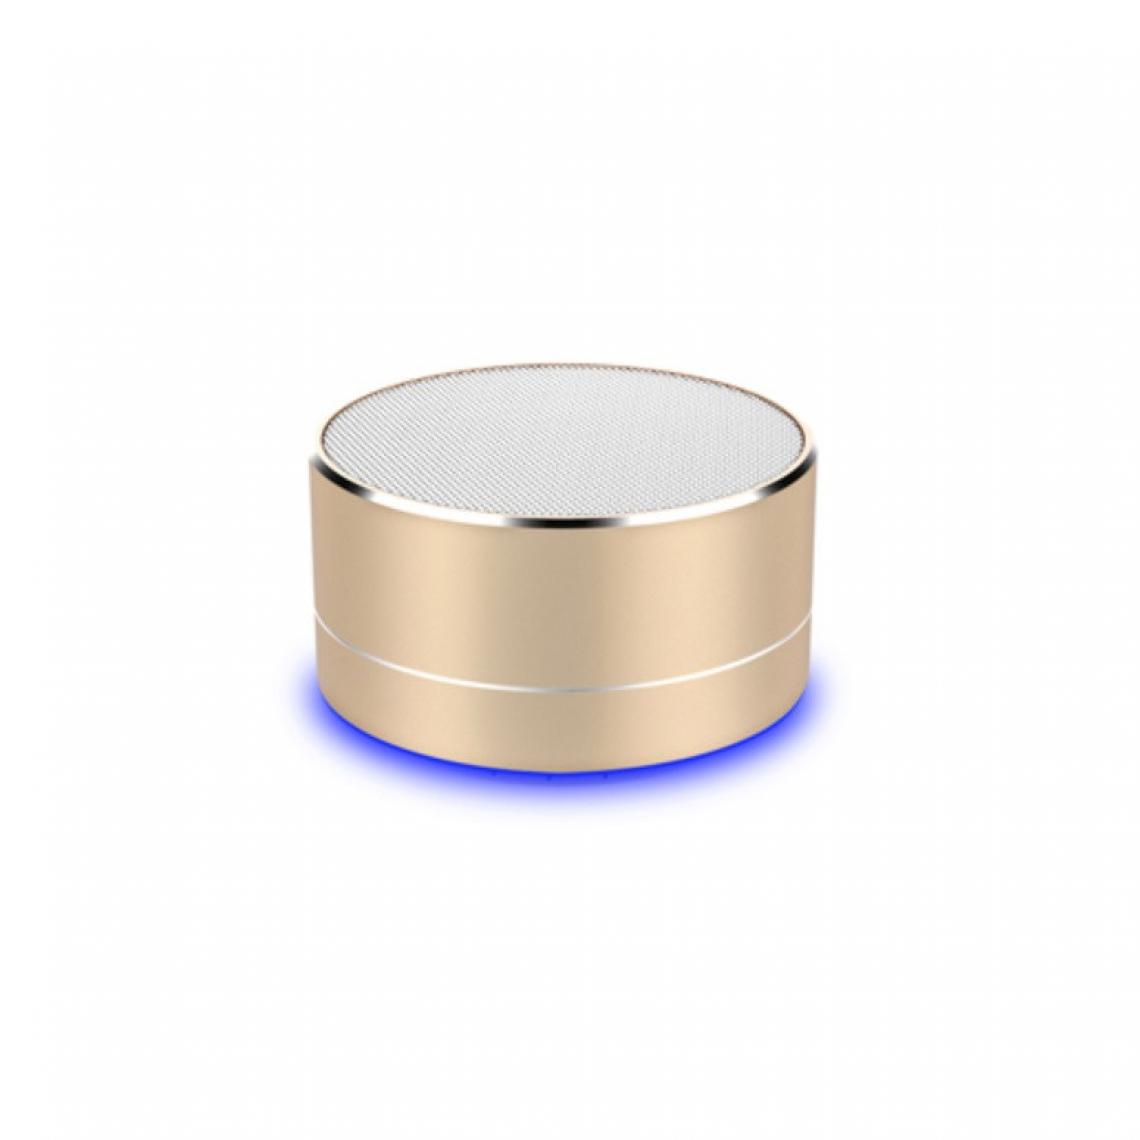 Shot - Enceinte Metal Bluetooth pour SAMSUNG Galaxy Z Flip Smartphone Port USB Carte TF Auxiliaire Haut-Parleur Micro Mini (OR) - Autres accessoires smartphone